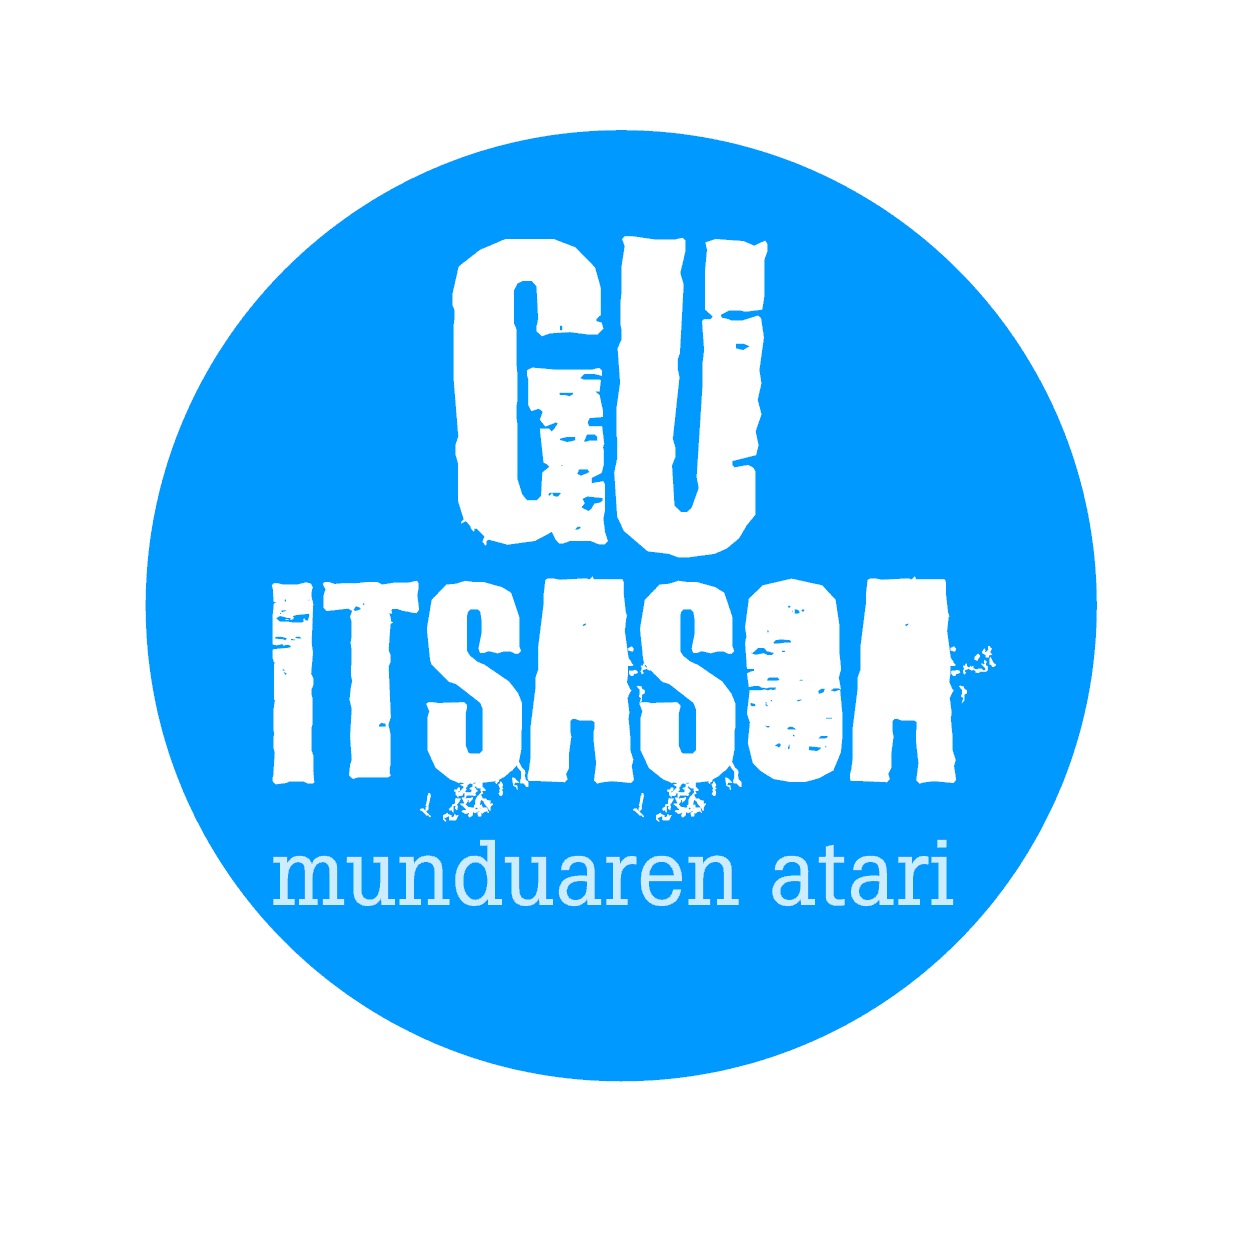 VISITA GUIADA DE LA EXPOSICIÓN "GU ITSASOA MUNDUAREN ATARI"